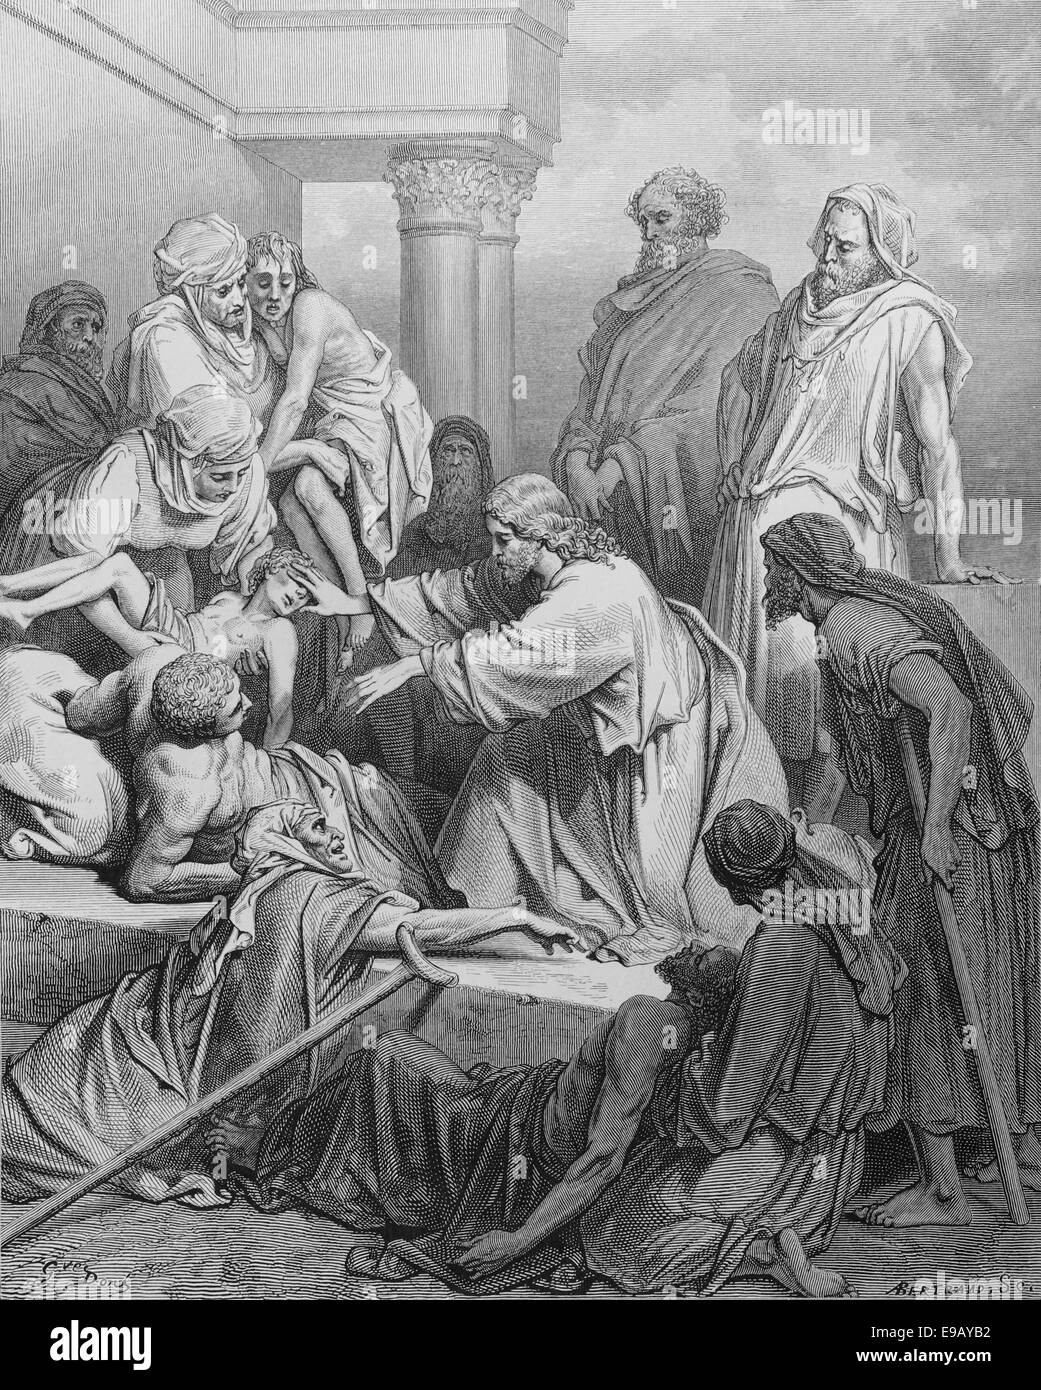 Bibbia illustrata. Il Nuovo Testamento. Gesù che guarisce i malati. Disegno di Gustave Dore (1832-1883). Xix secolo. Foto Stock